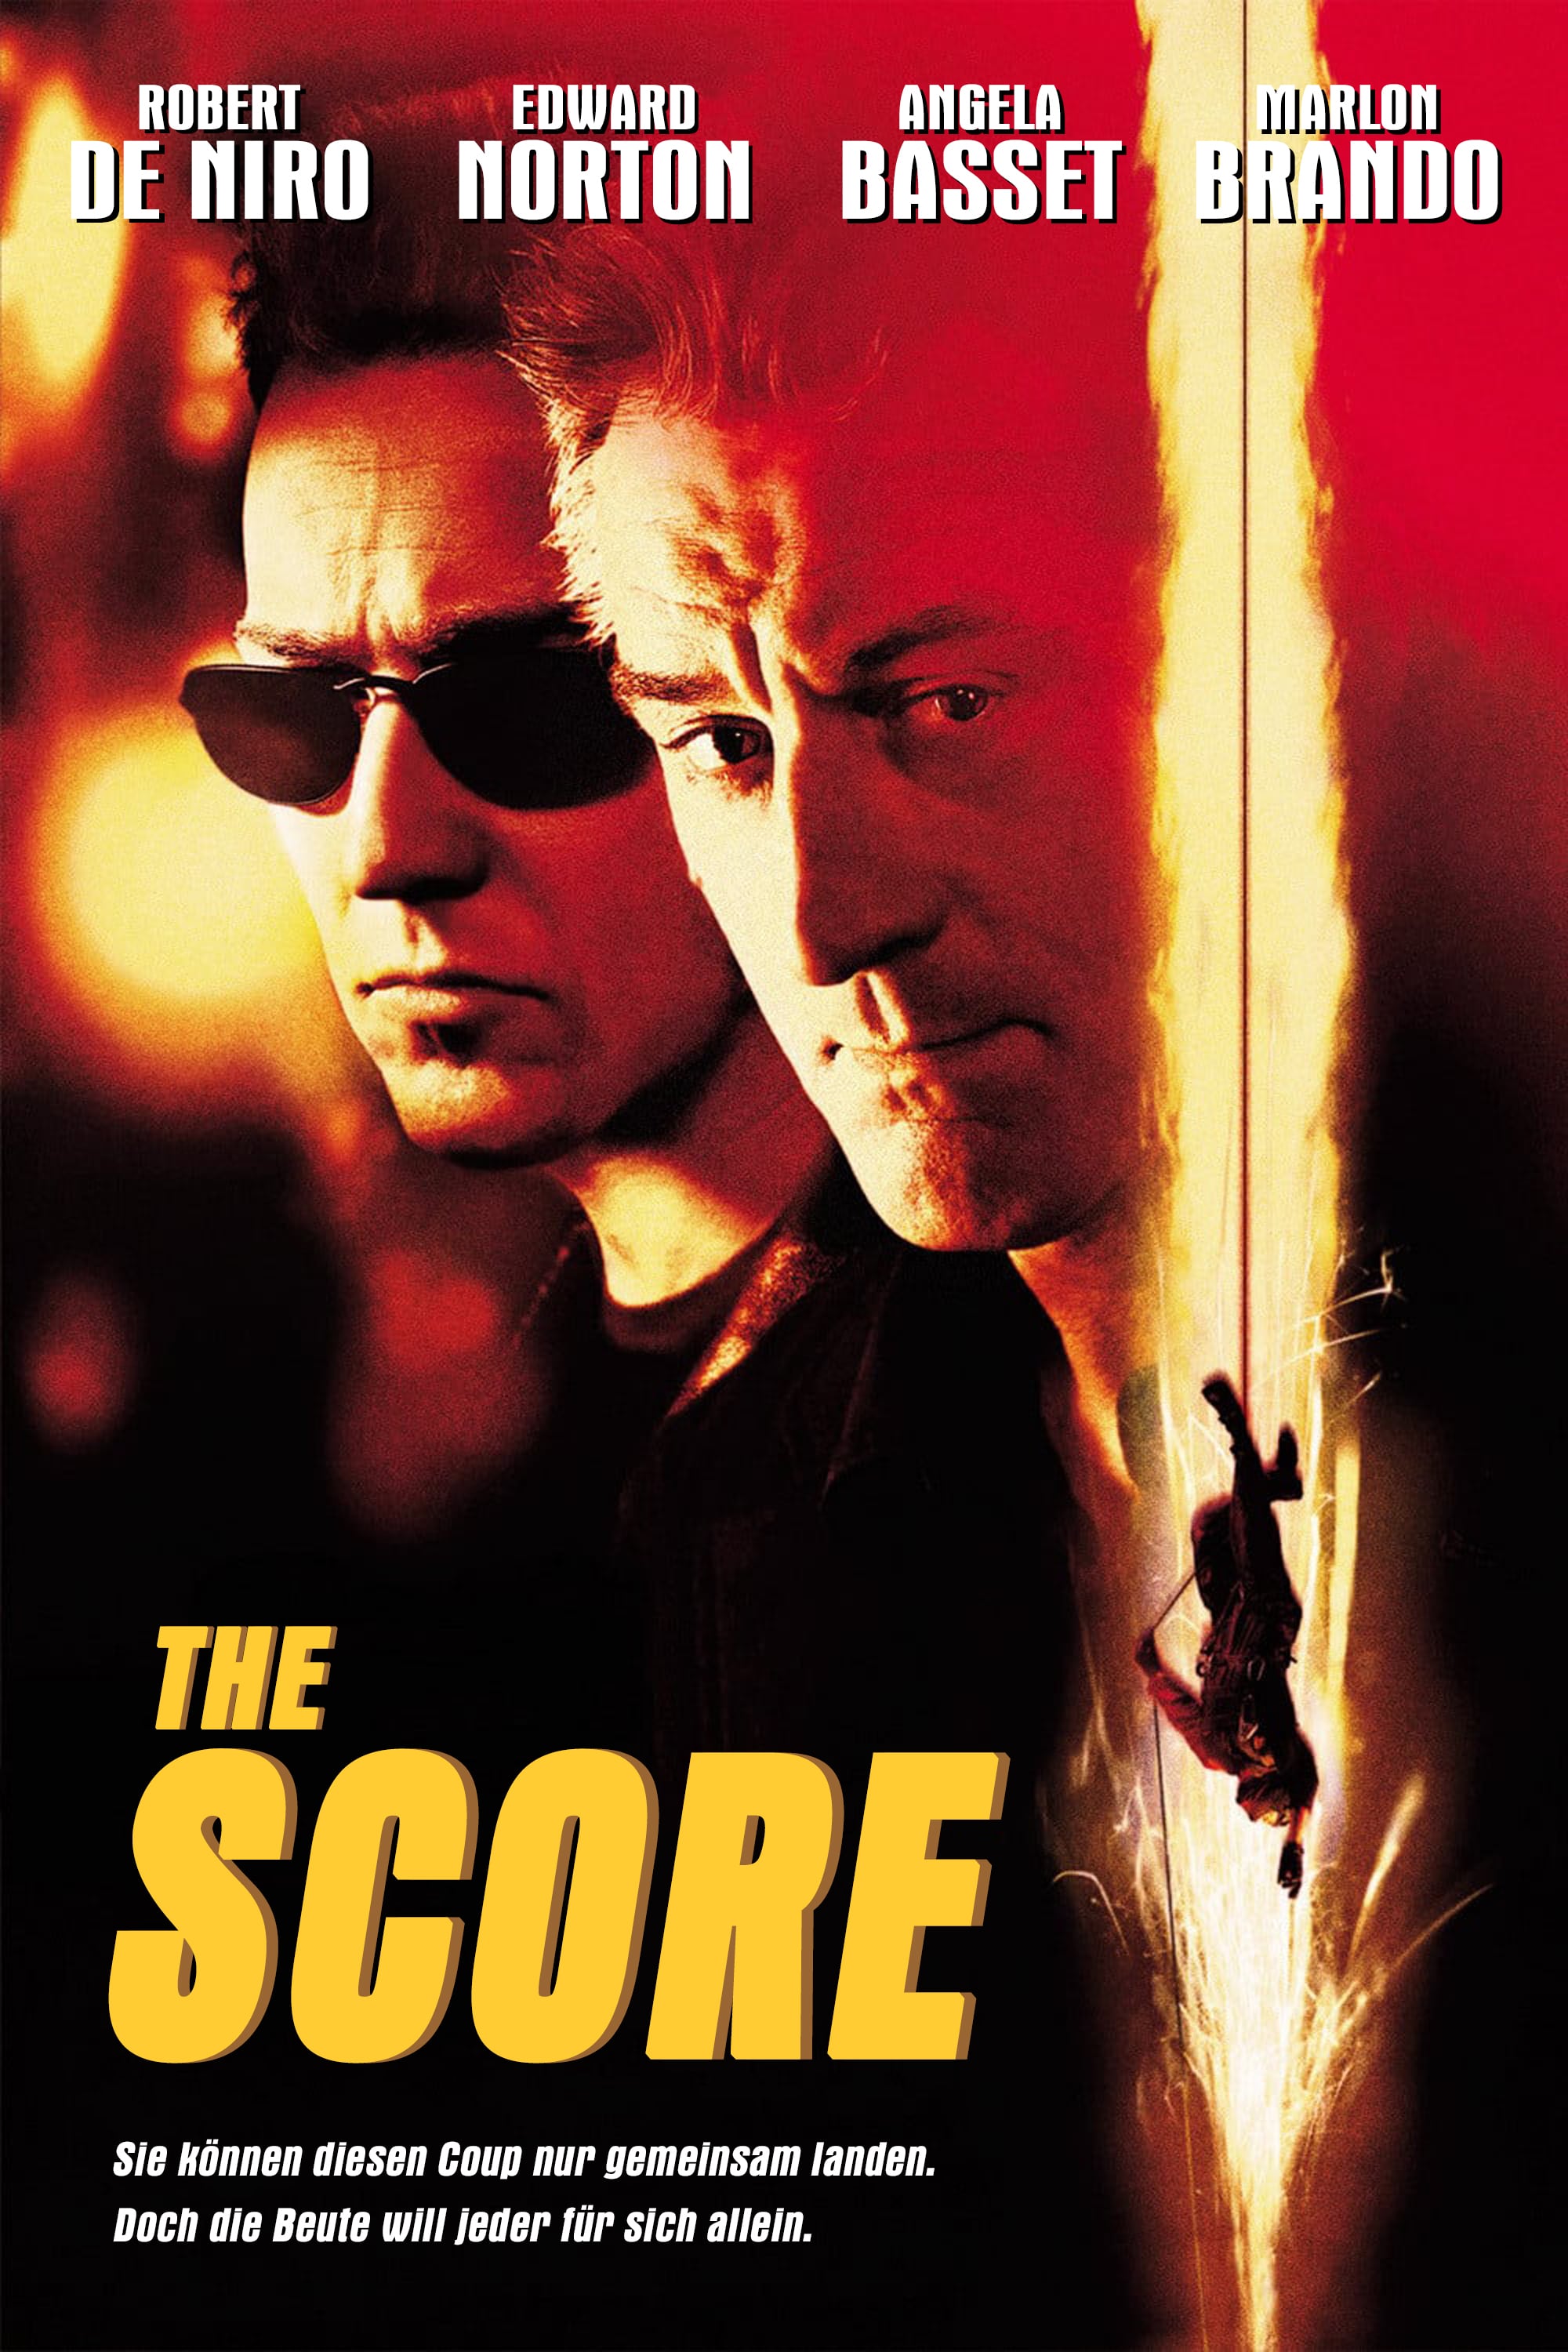 Plakat von "The Score"